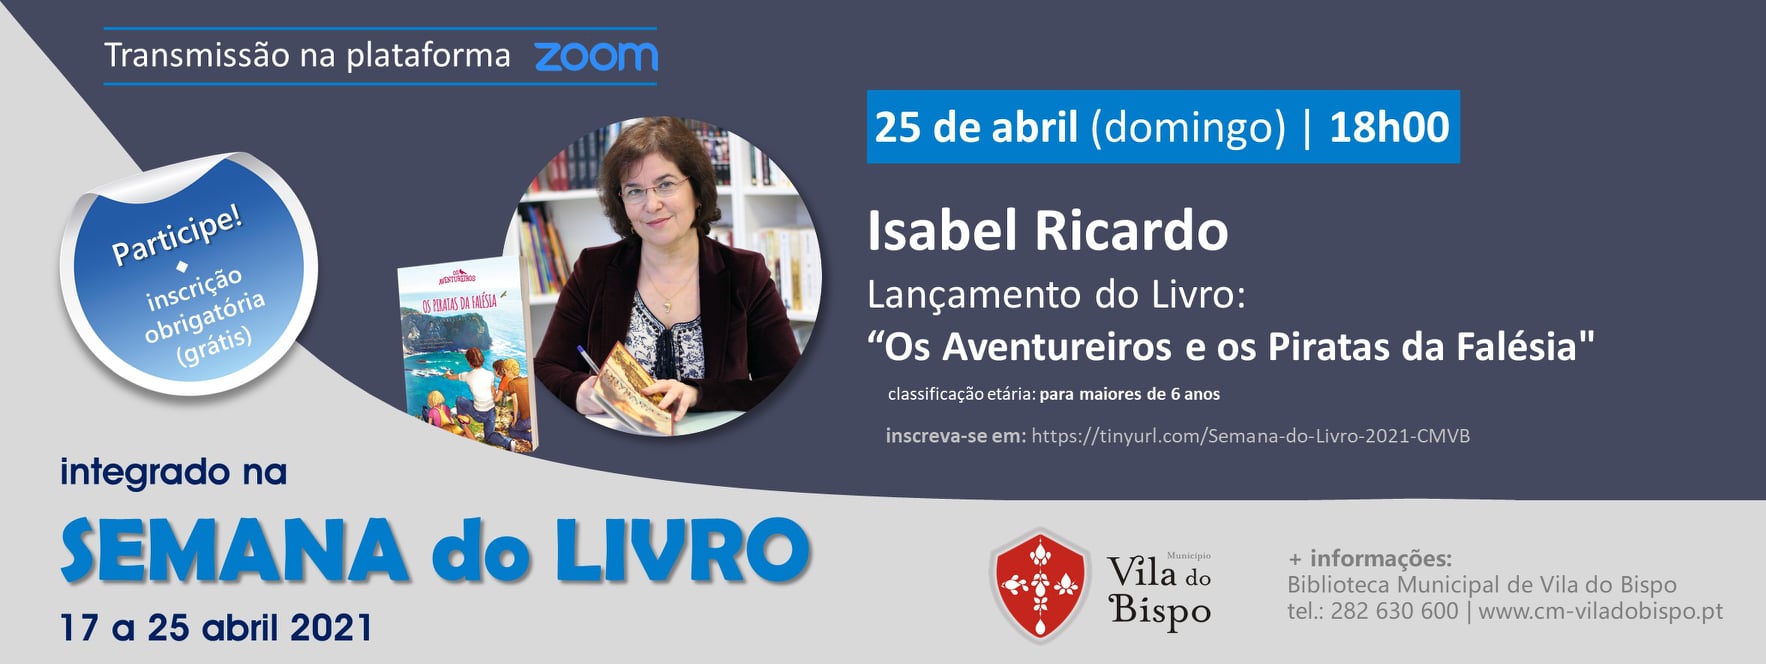 Vila do Bispo promove lançamento do livro "Os Aventureiros e os Piratas da Falésia" de Isabel Ricardo